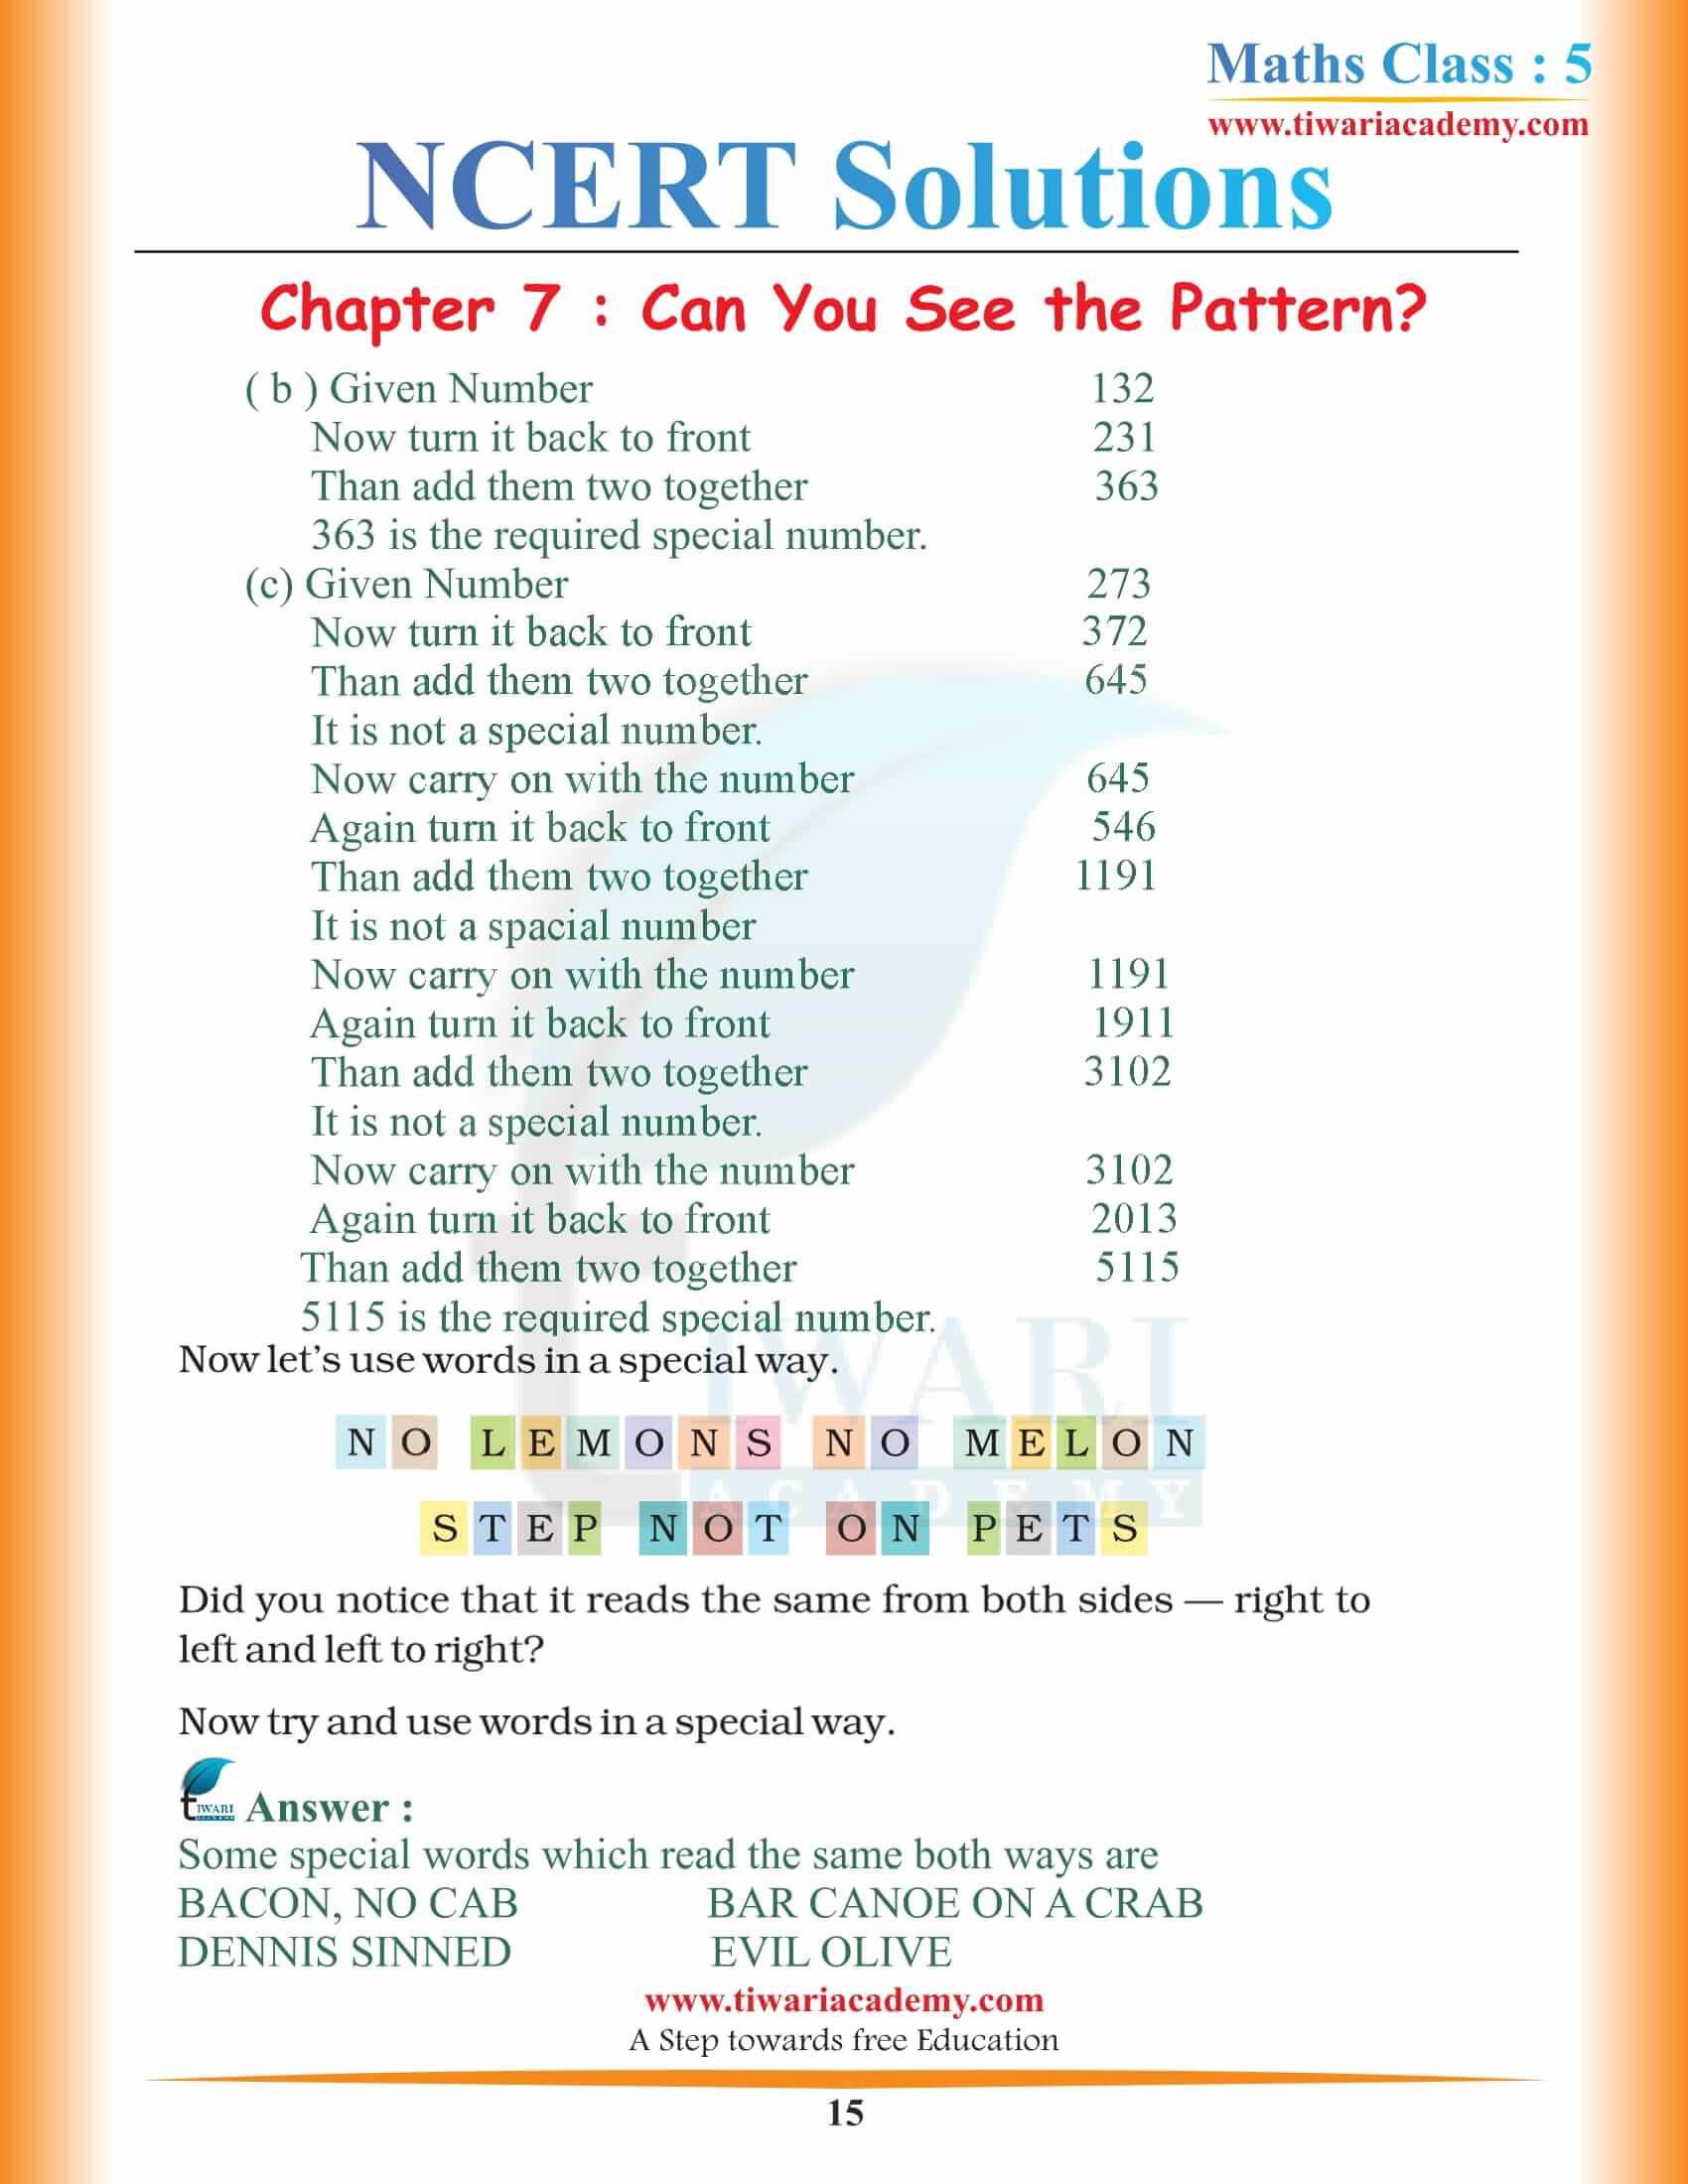 Class 5 Maths Chapter 7 NCERT Solutions download